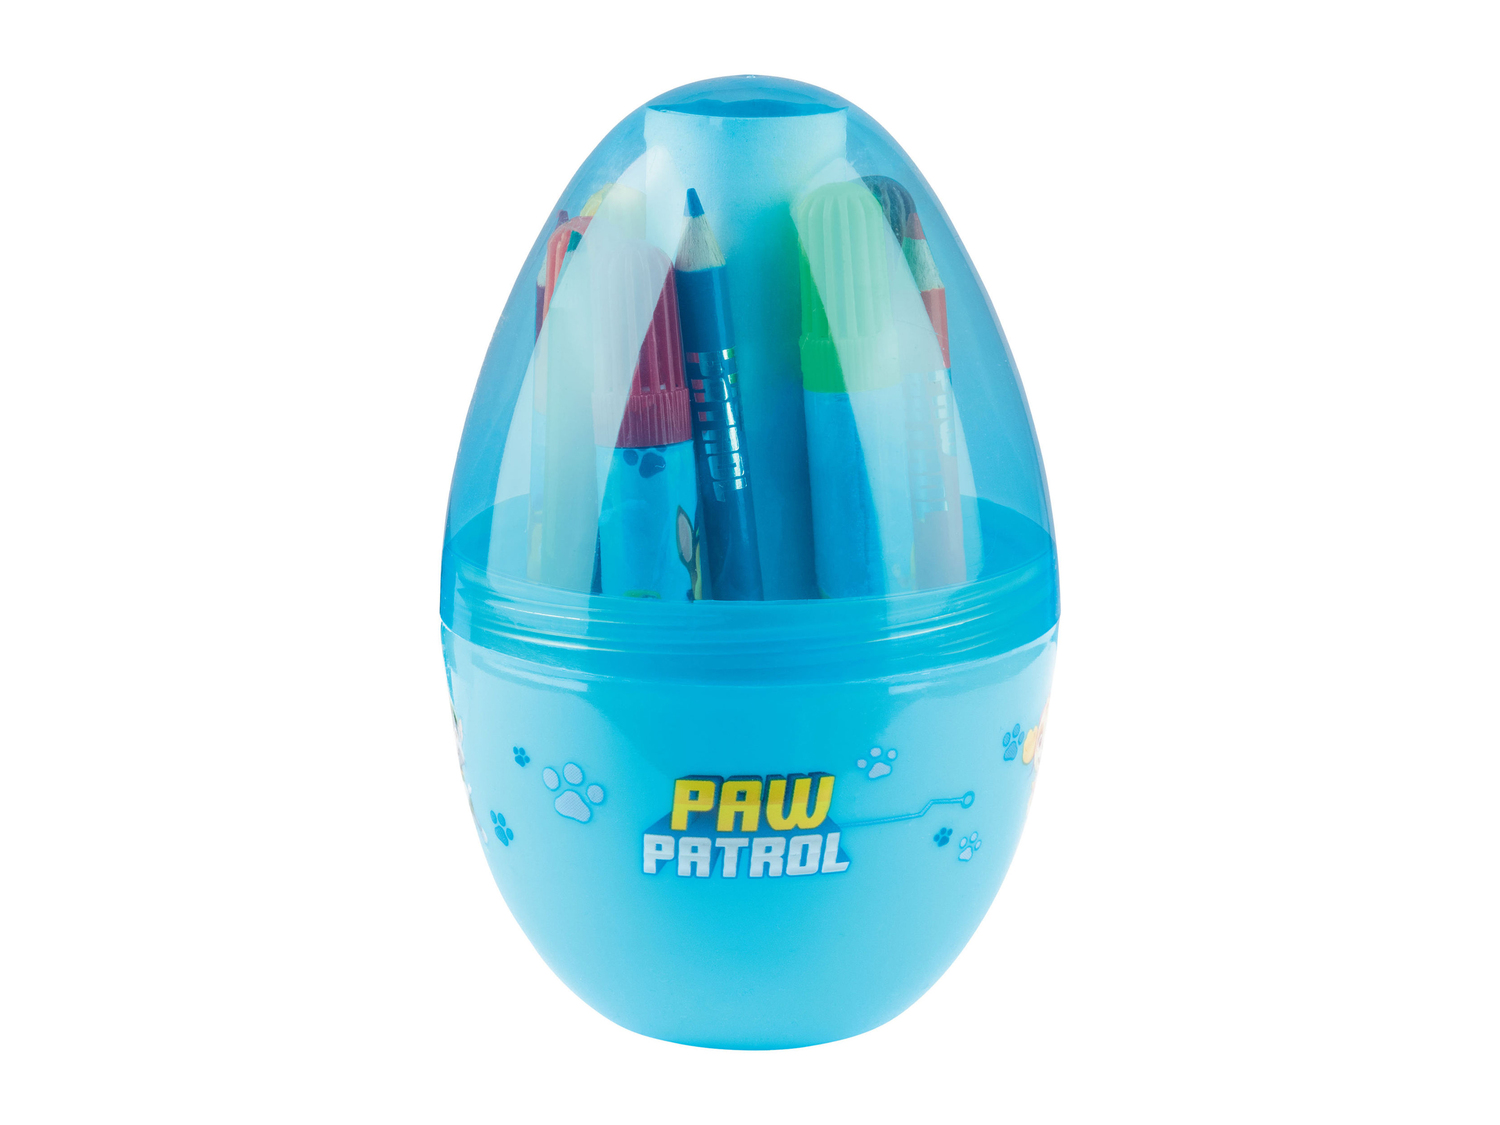 Gioco uovo creativo , prezzo 4.99 &#8364; 
Include
- 6 pennarelli
- 6 mini matite ...